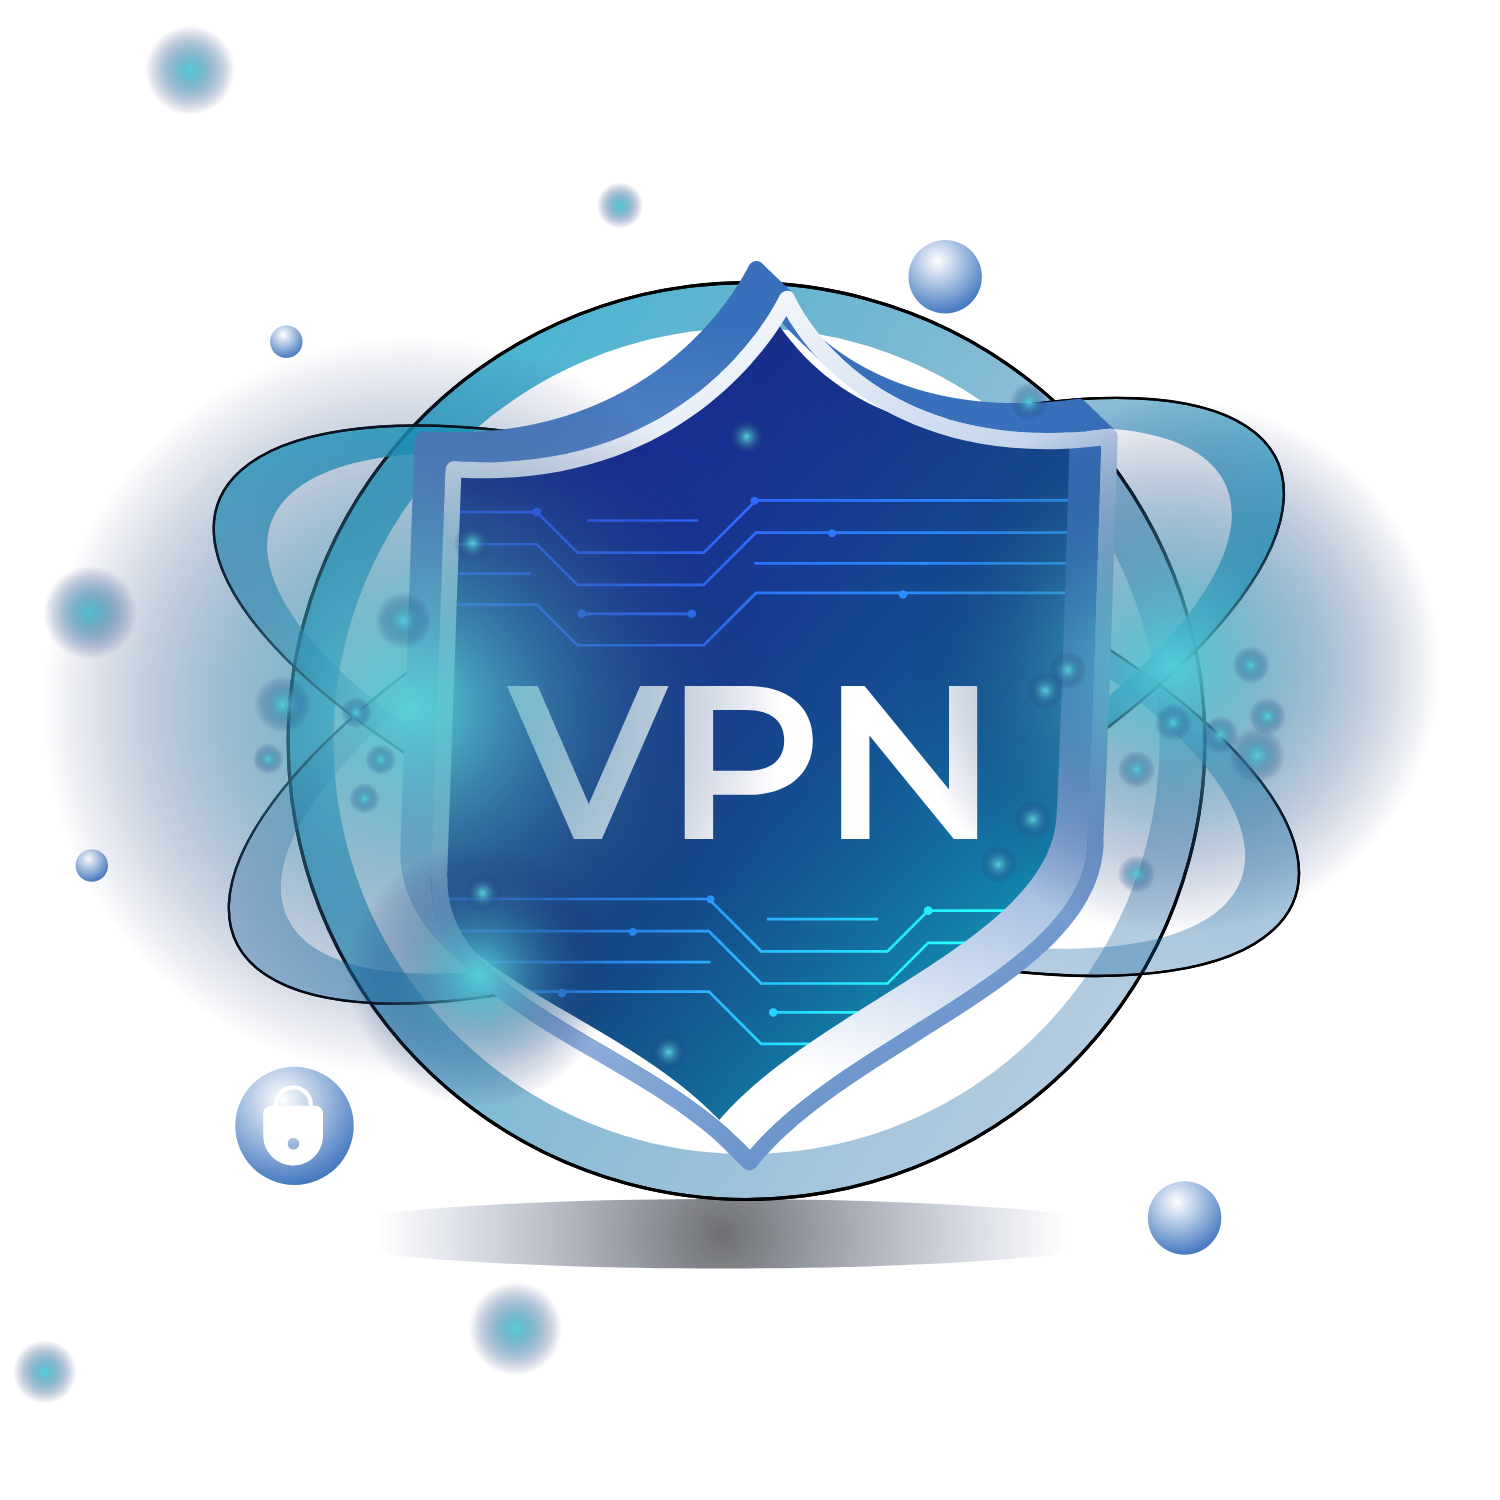 Logo VPN in blu su uno scudo virtuale